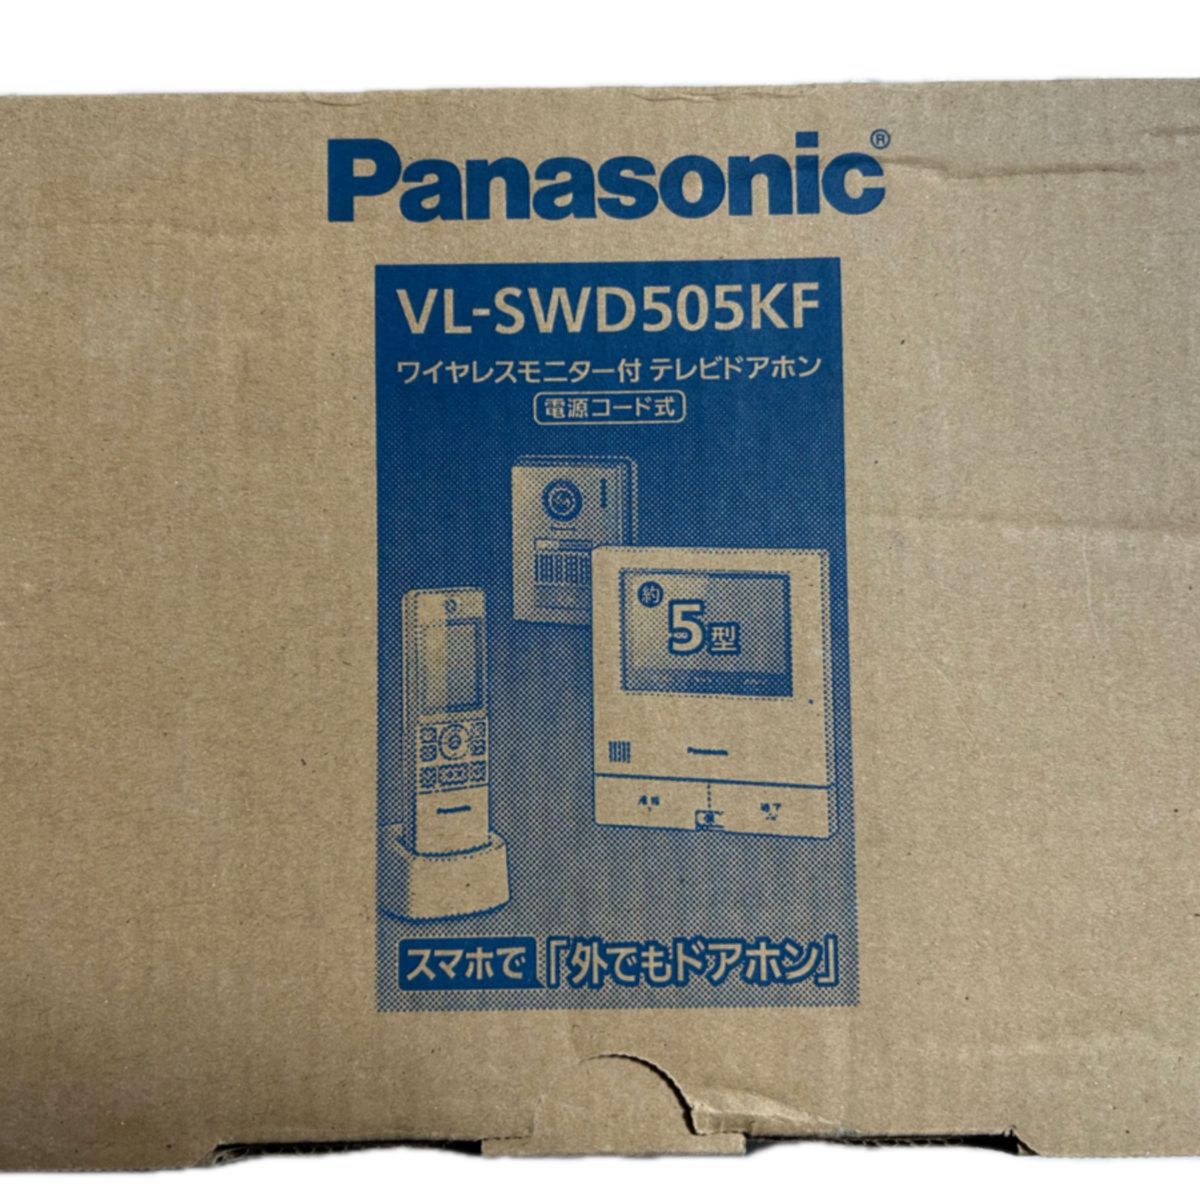 VL-SWD505KFワイヤレスモニター付テレビドアホン　パナソニック